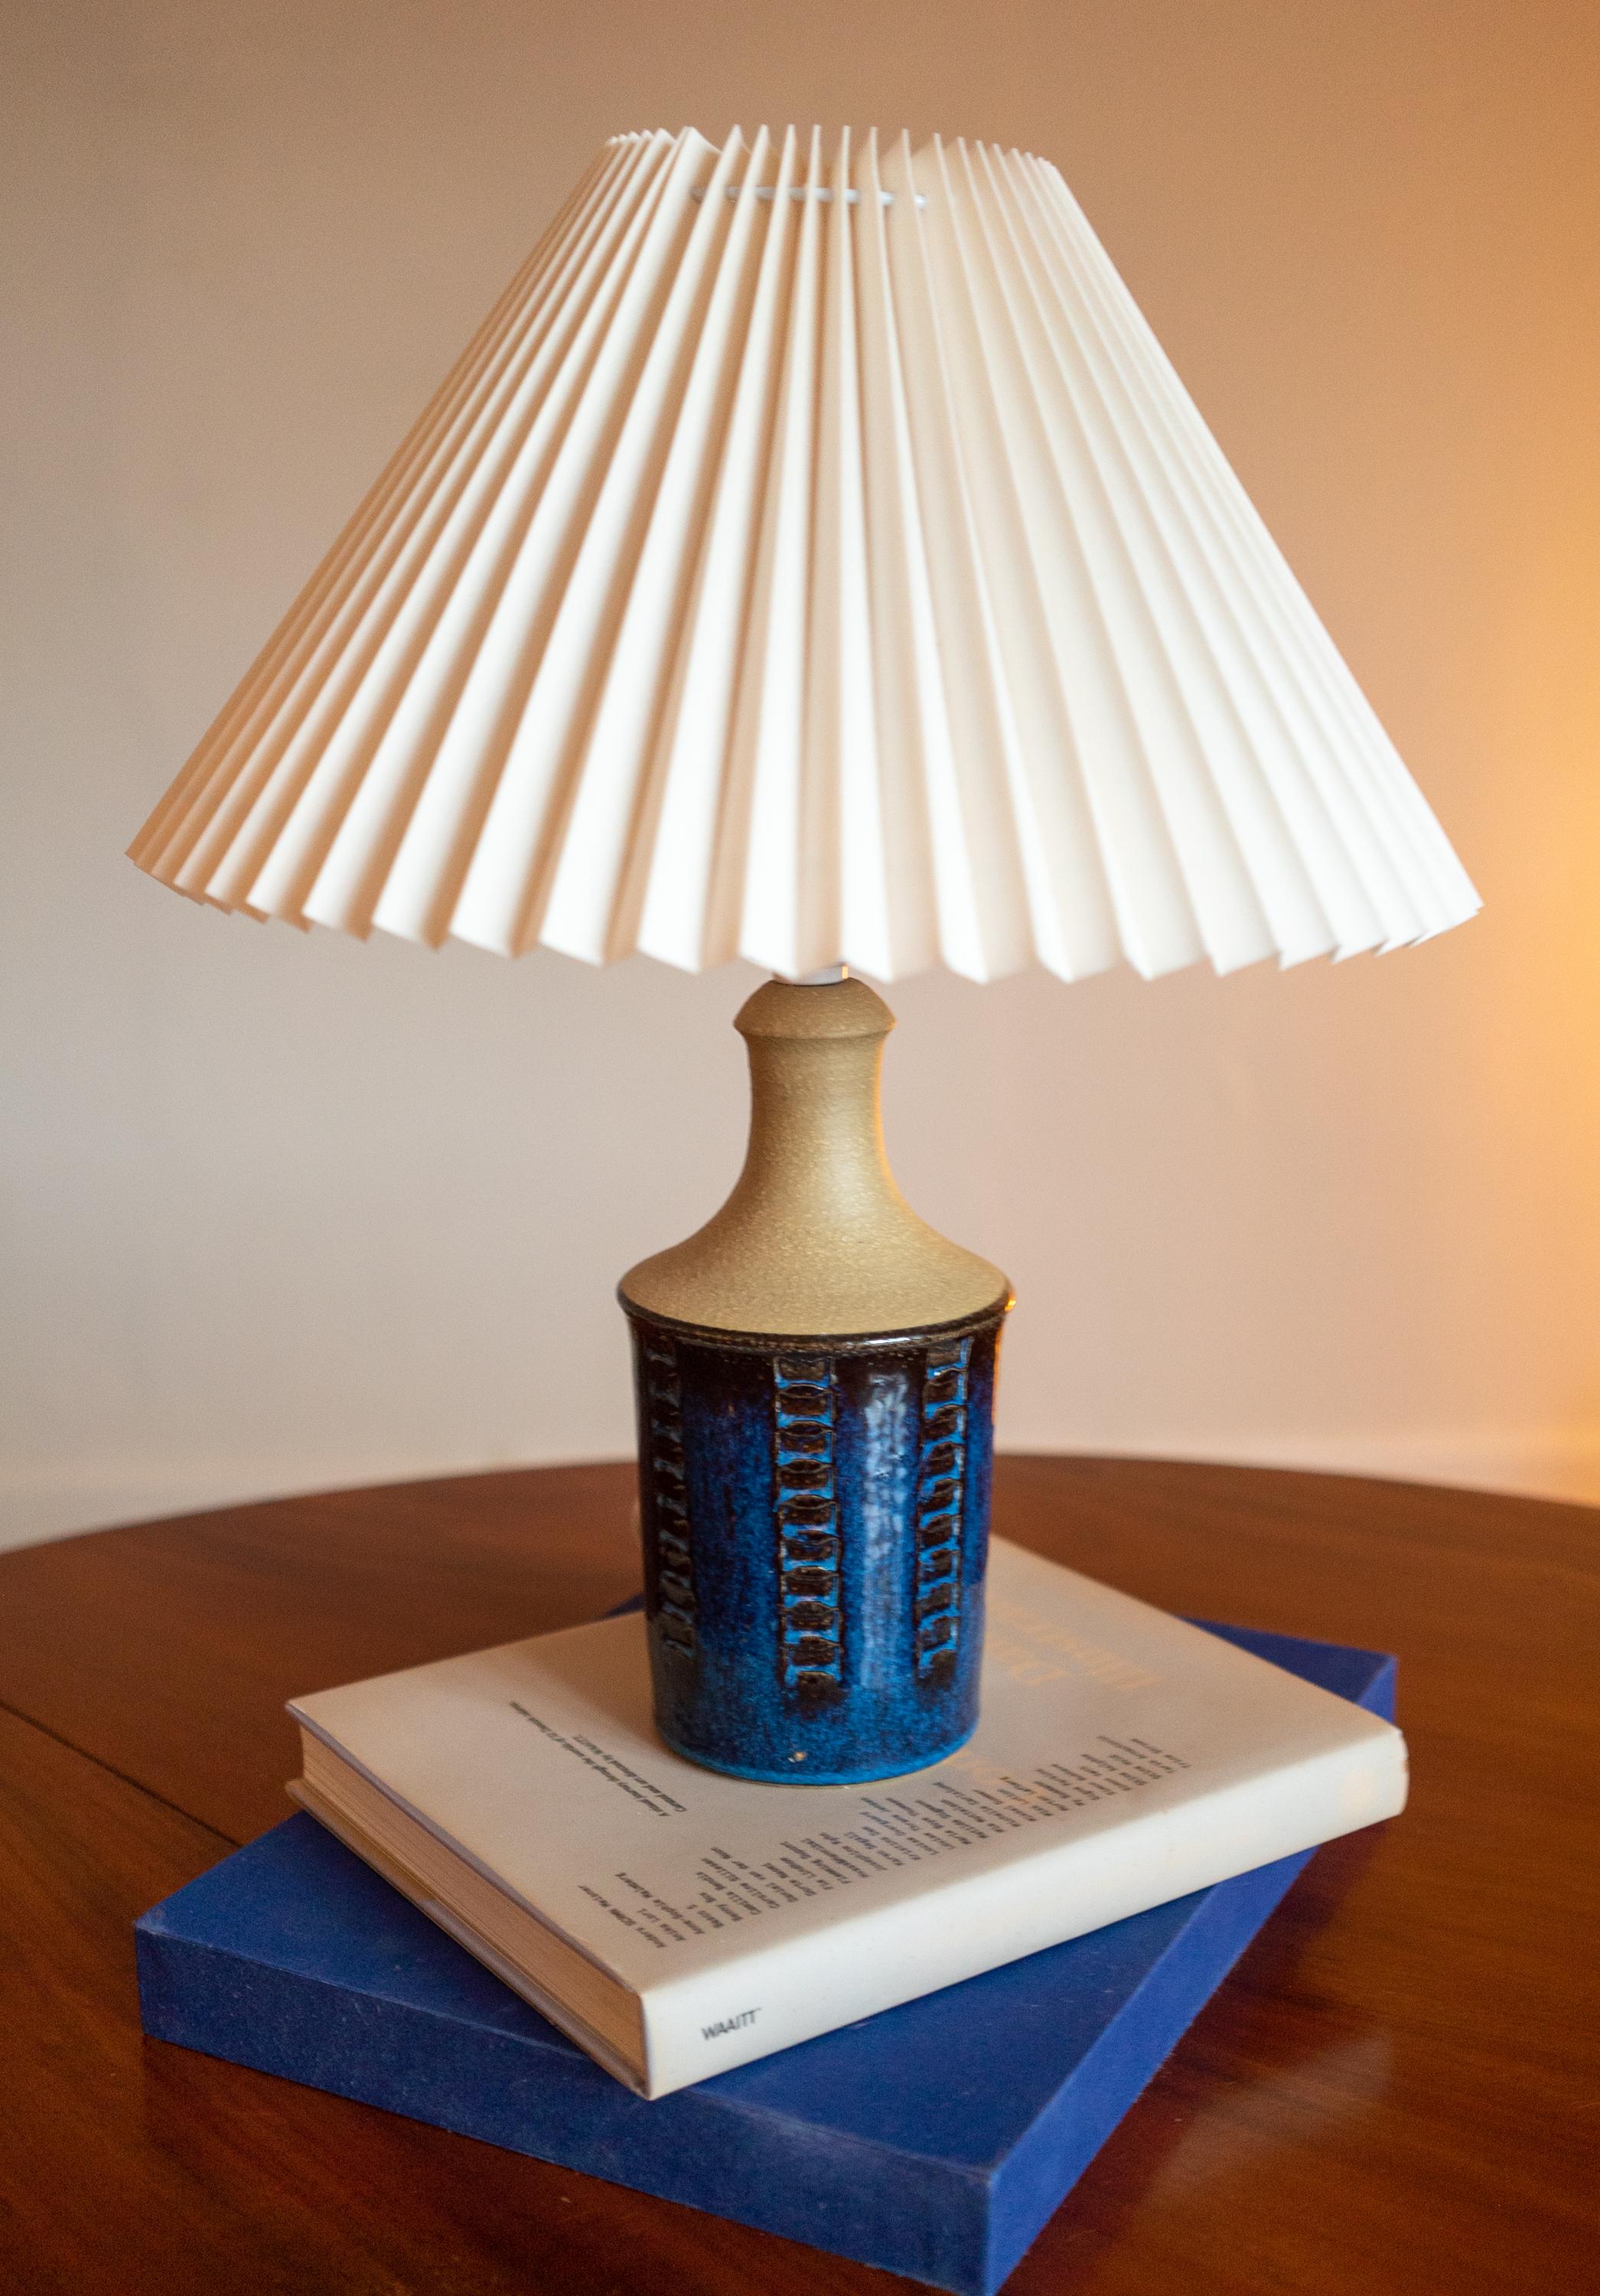 Eine Tischlampe aus Steinzeug, handgefertigt von Maria Phillipi für Danish Søholm auf der Insel Bornholm in Dänemark in den 1960er Jahren.

Auf dem Sockel gestempelt und signiert.

Verkauft ohne Lampenschirm. Höhe einschließlich Sockel. 
voll